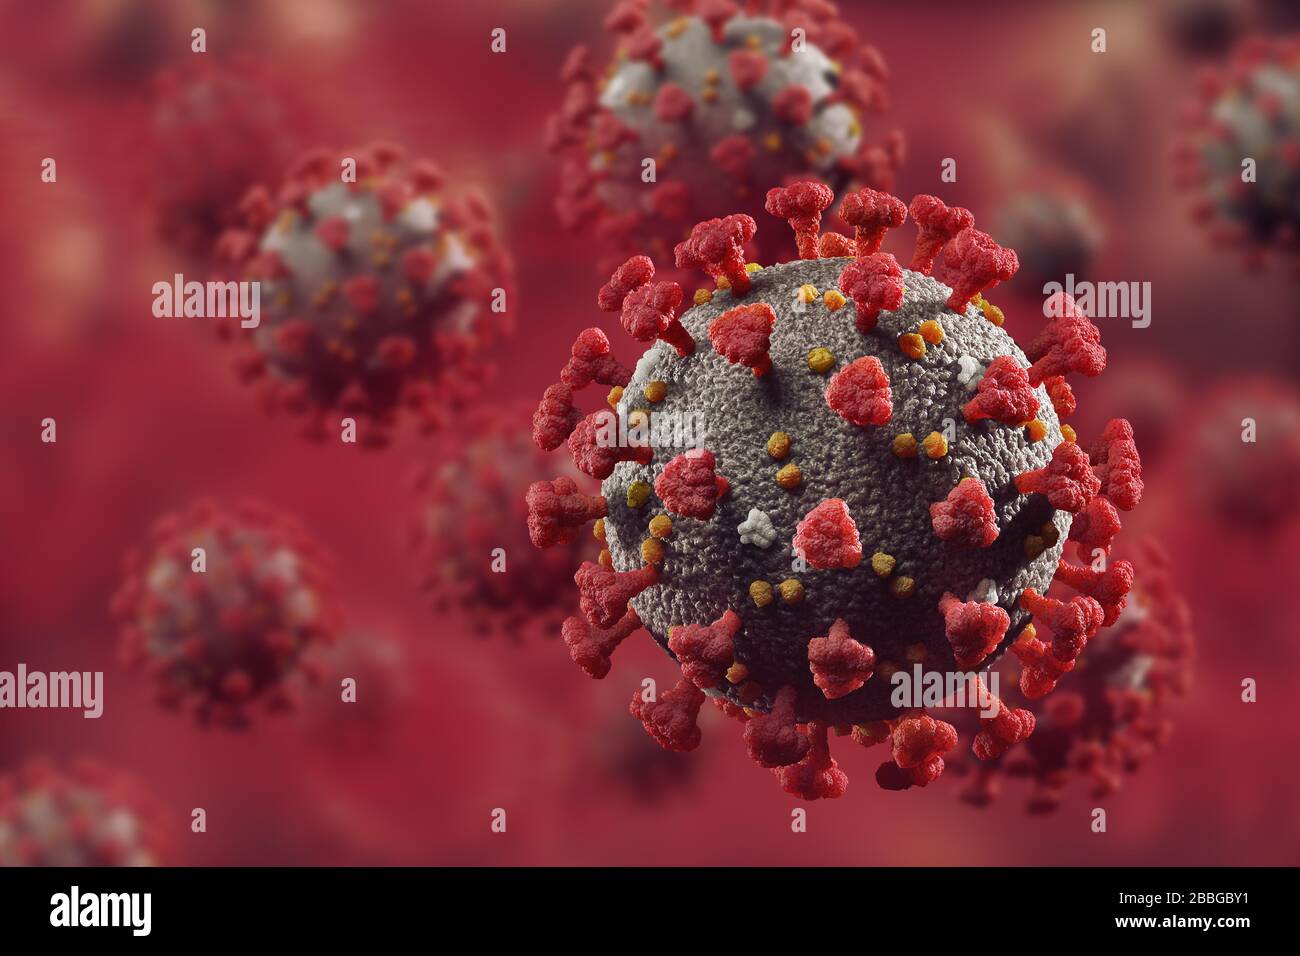 Coronavirus, COVID-19, particelle di virus Corona, virioni nel sangue rosso. SARS-COV-2 Illustrazione medica artistica 3D a colori. Foto Stock